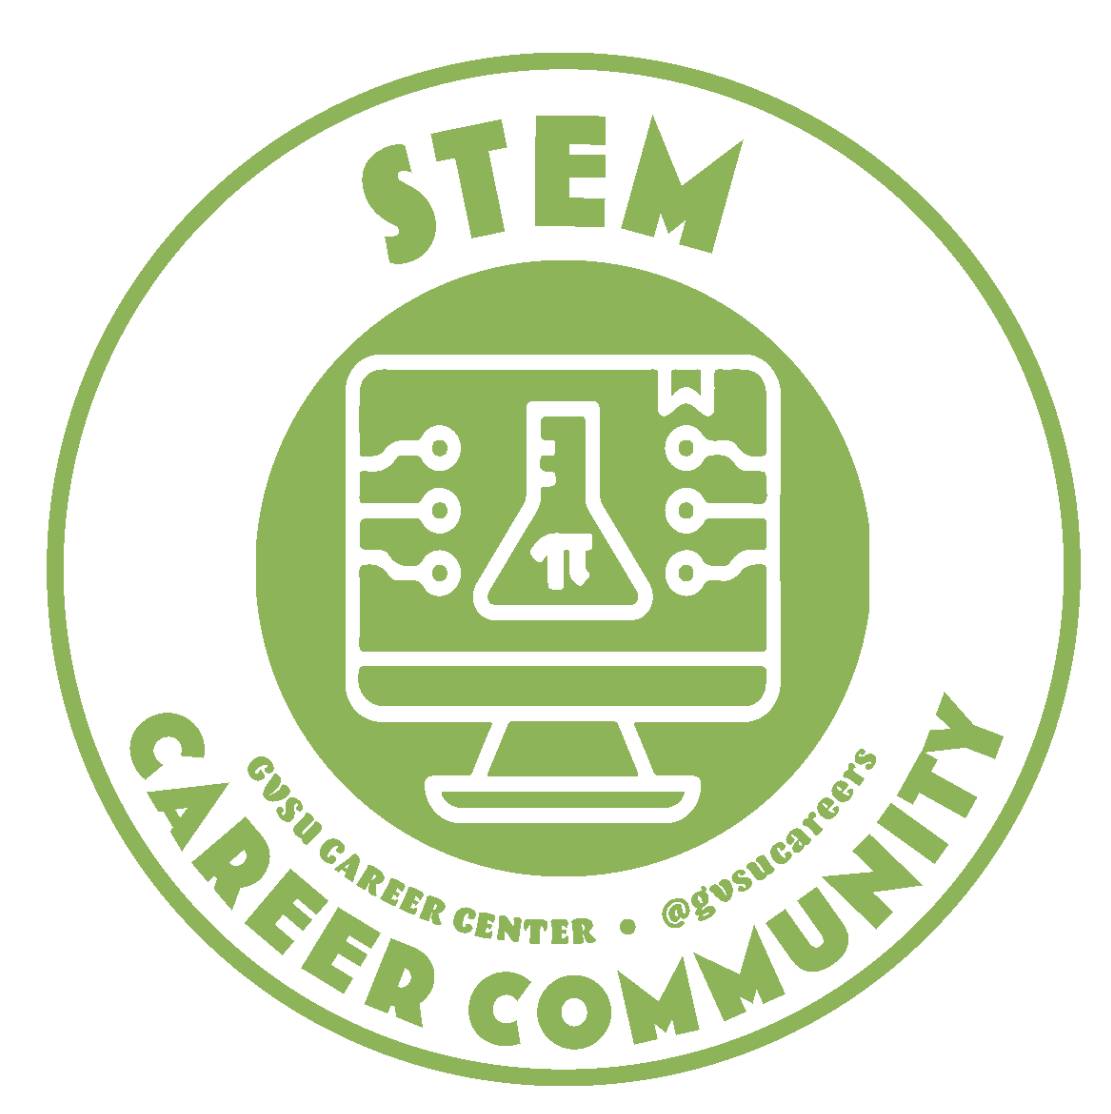 stem cc logo